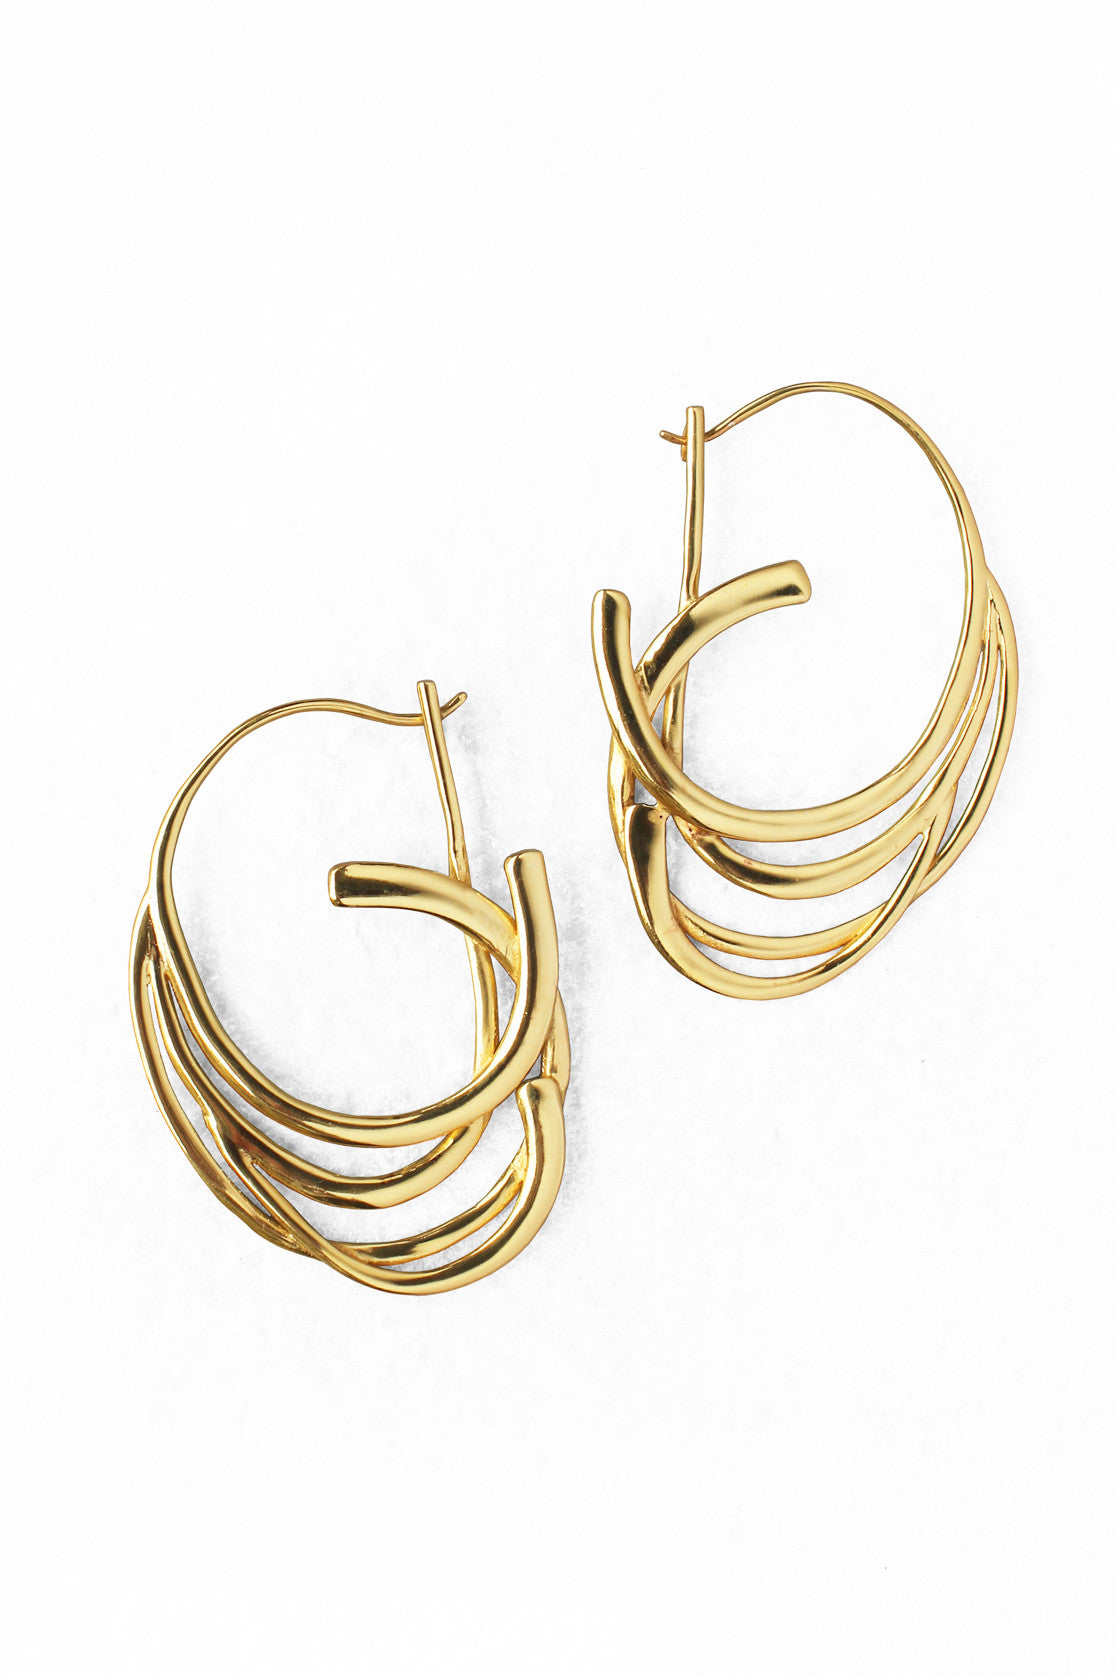 Kendra Scott Crystal Stud Hoop Earrings Rose Gold 1.75